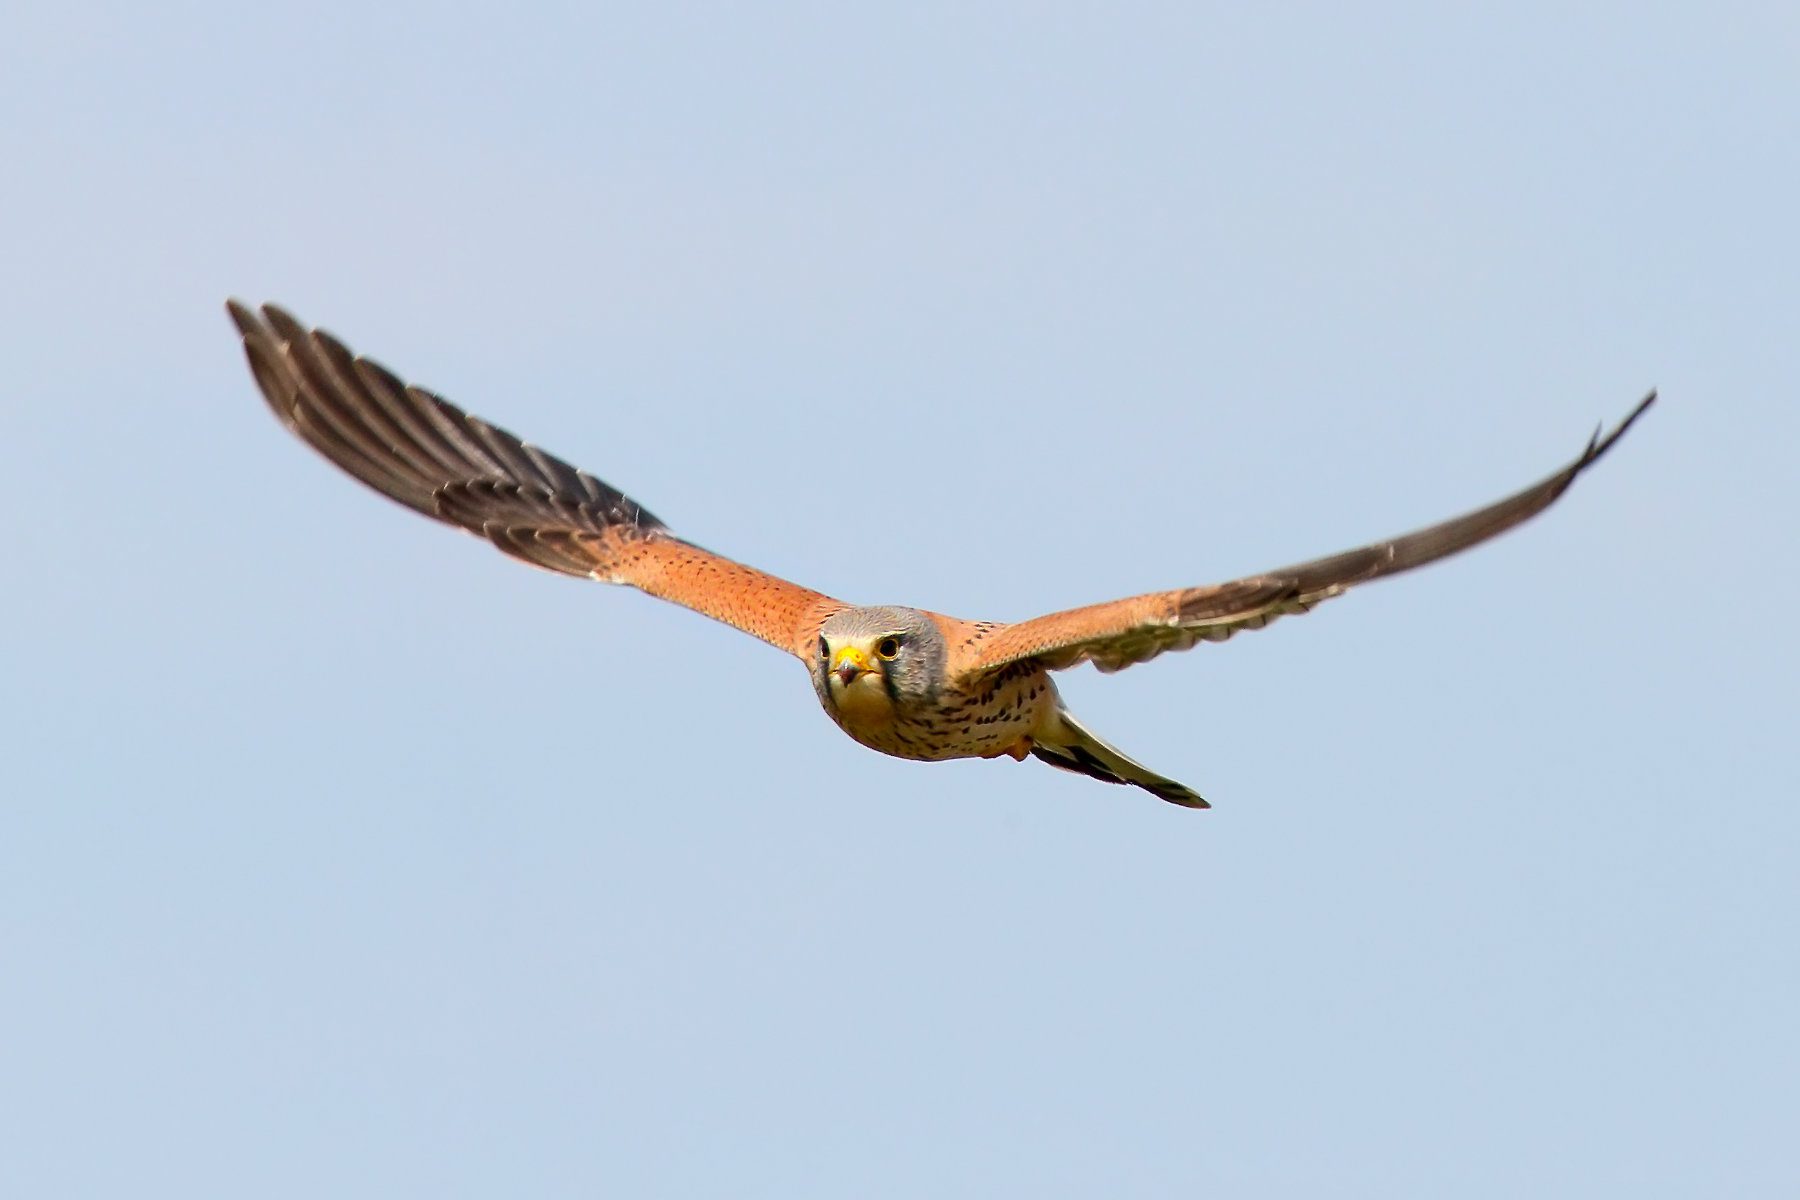 Common Kestral flying in blue sky